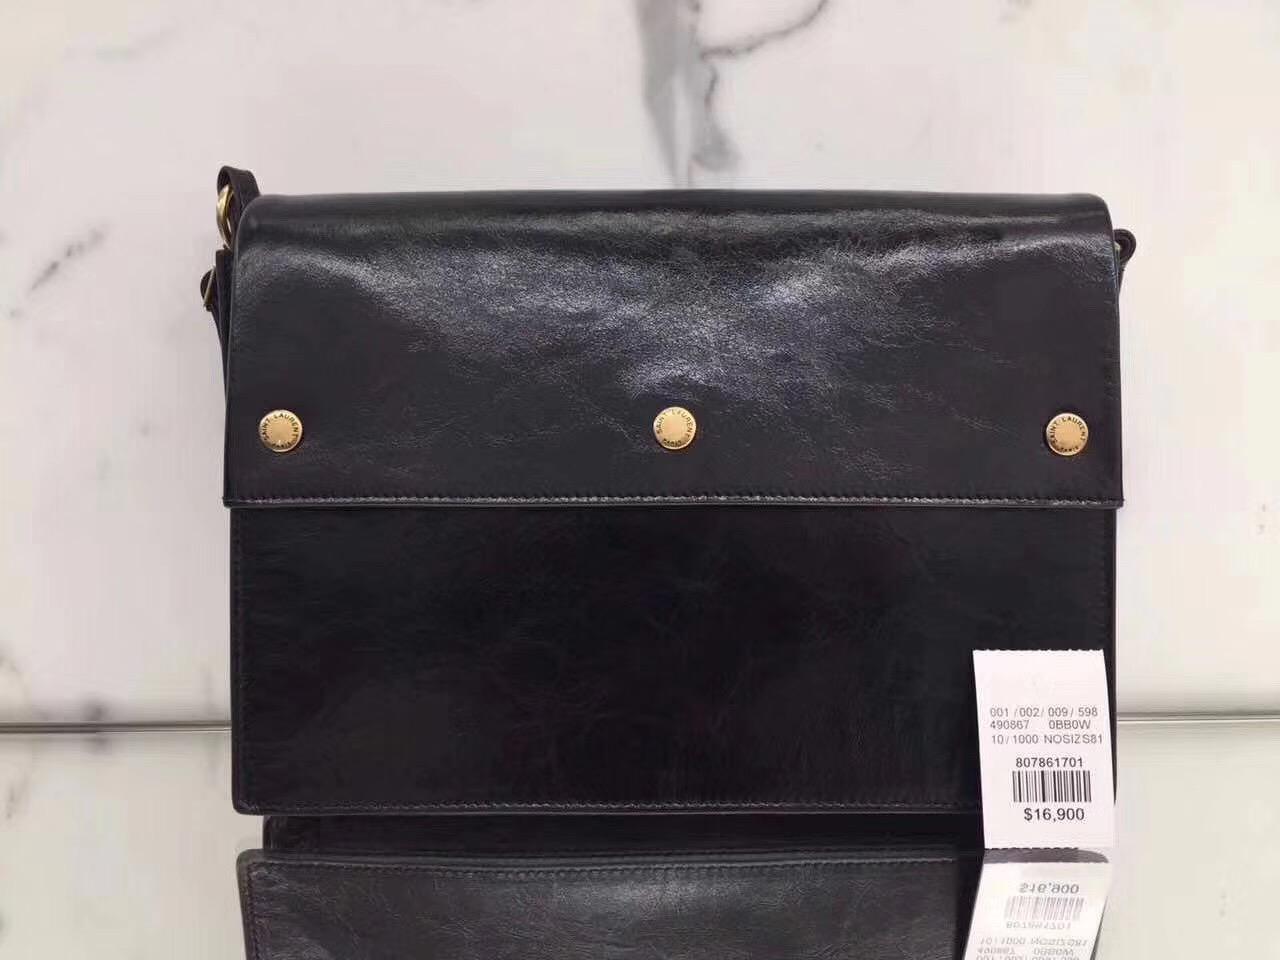 ysl NOE SAINT LAURENT crossbody bag in black moroder leather